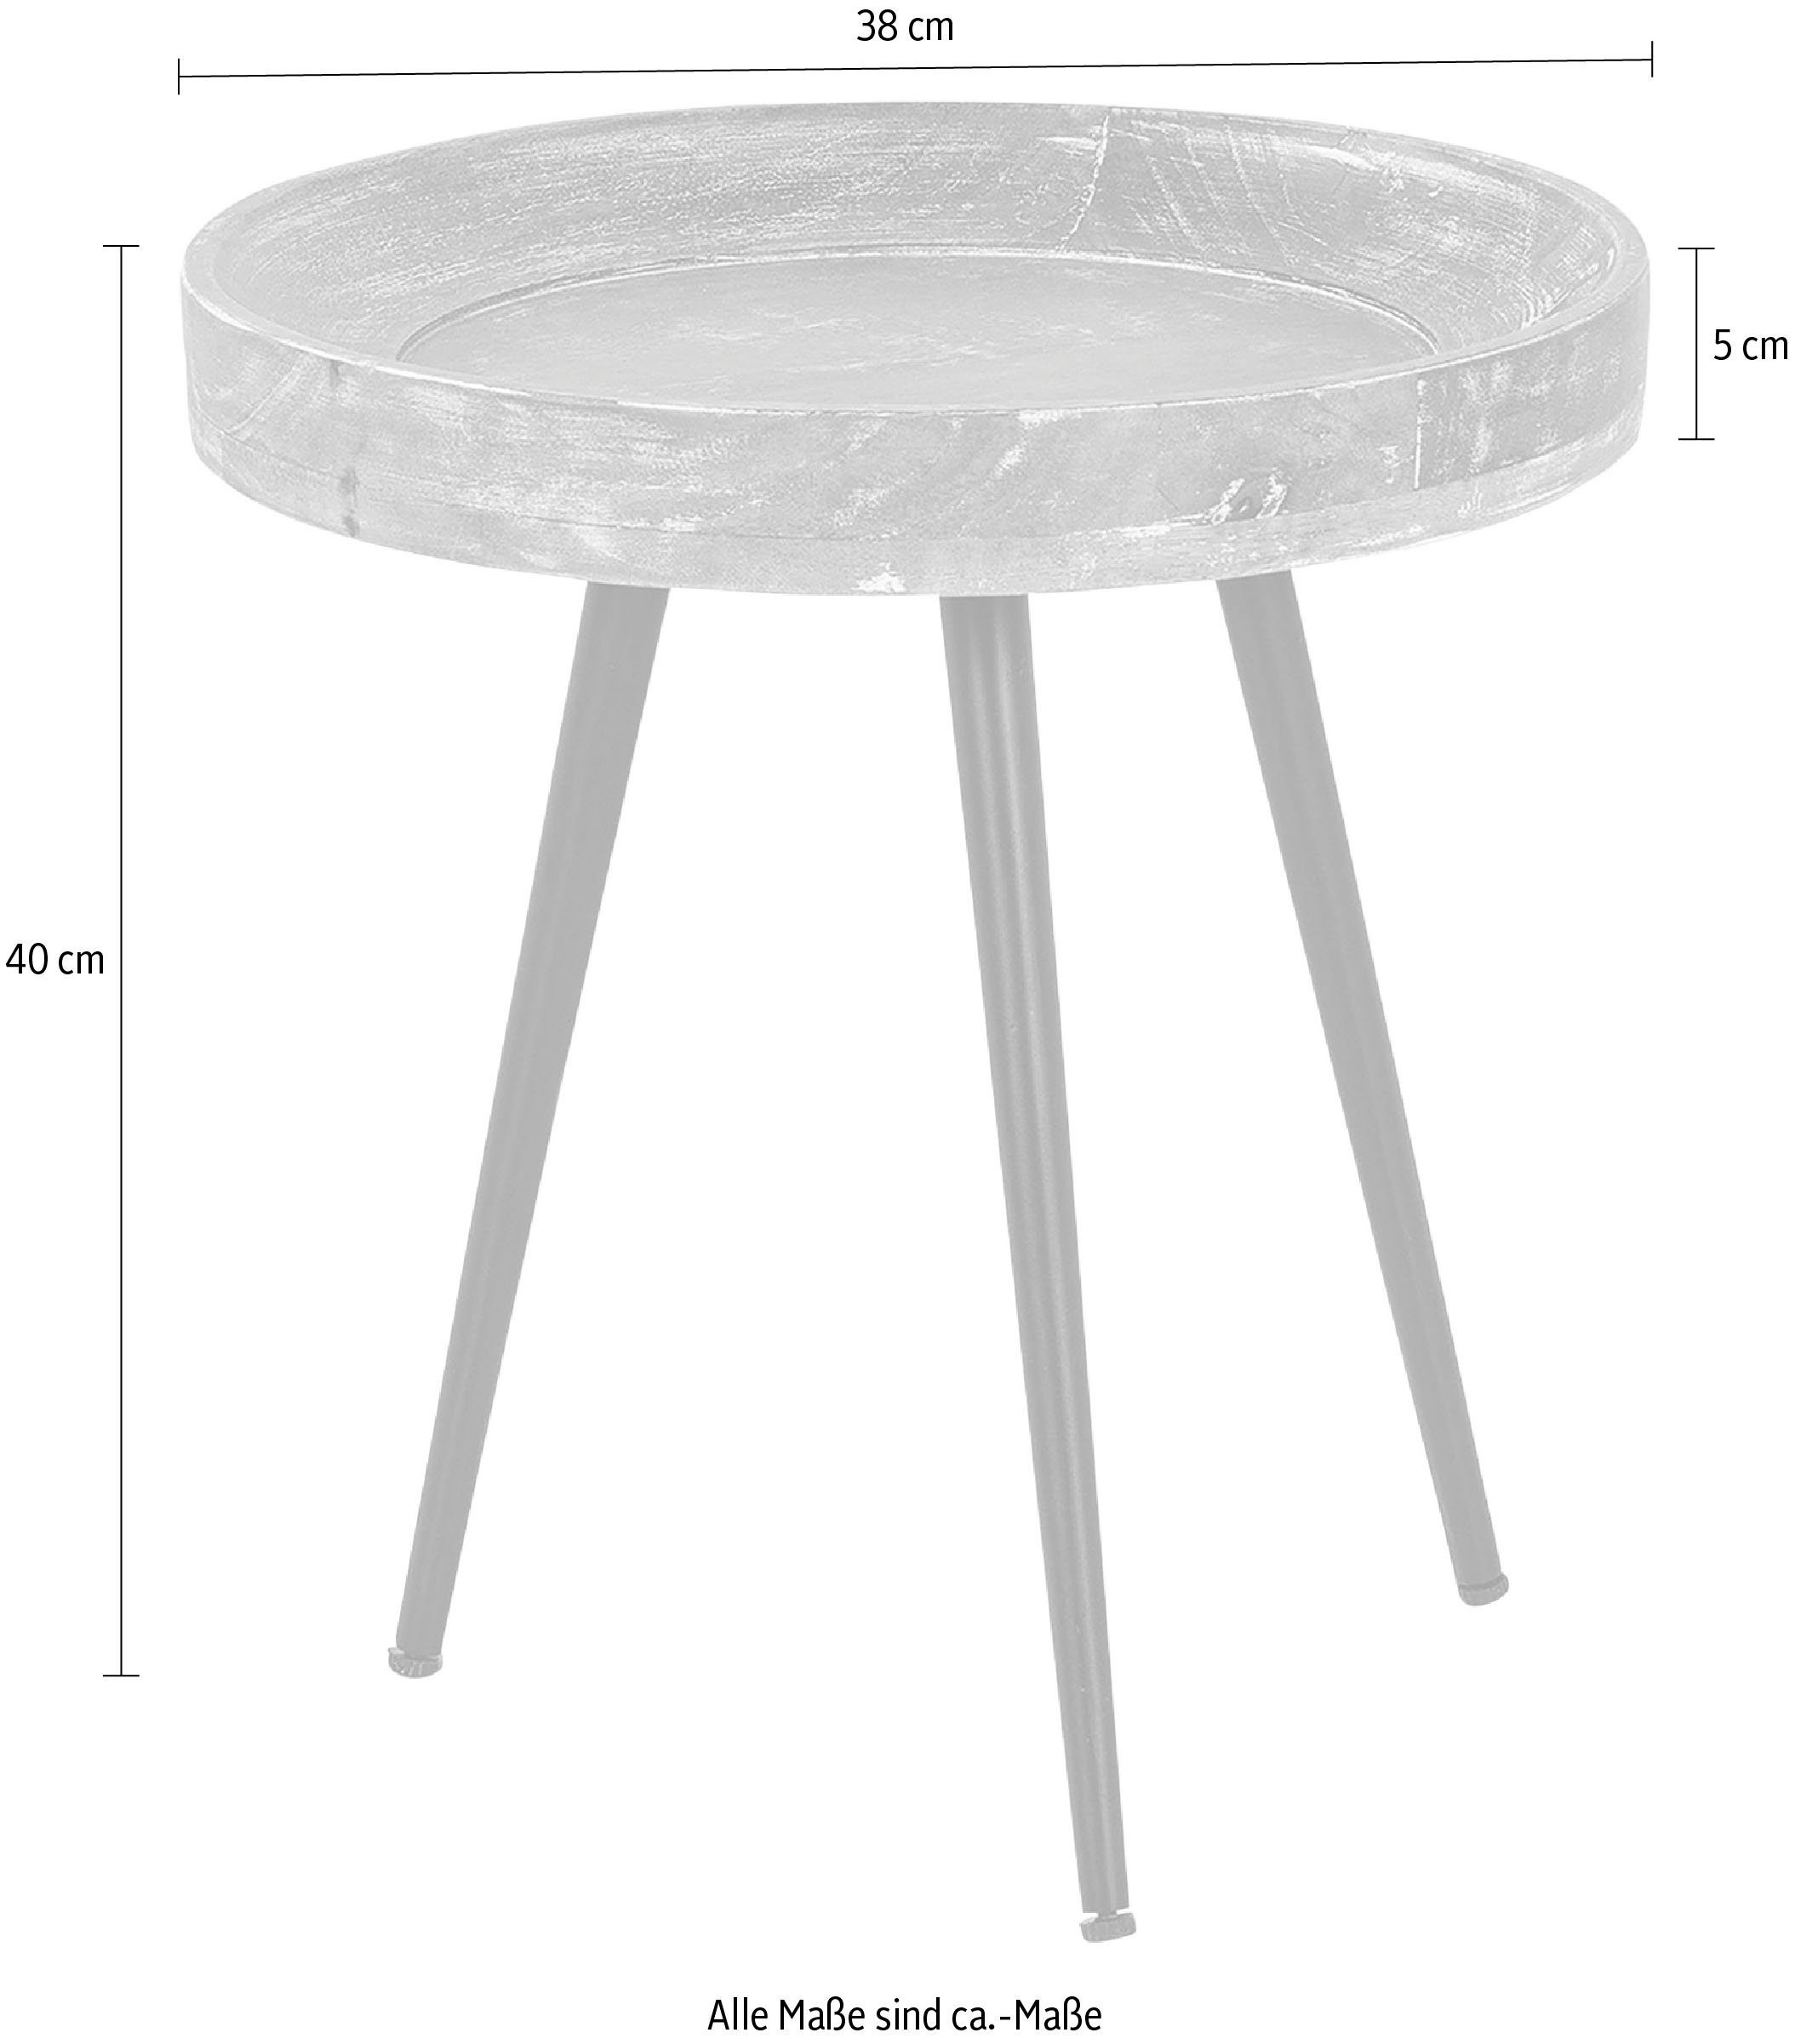 byLIVING 38 runde cm Ava, 45 oder Massive Durchmesser Tischplatte, Beistelltisch